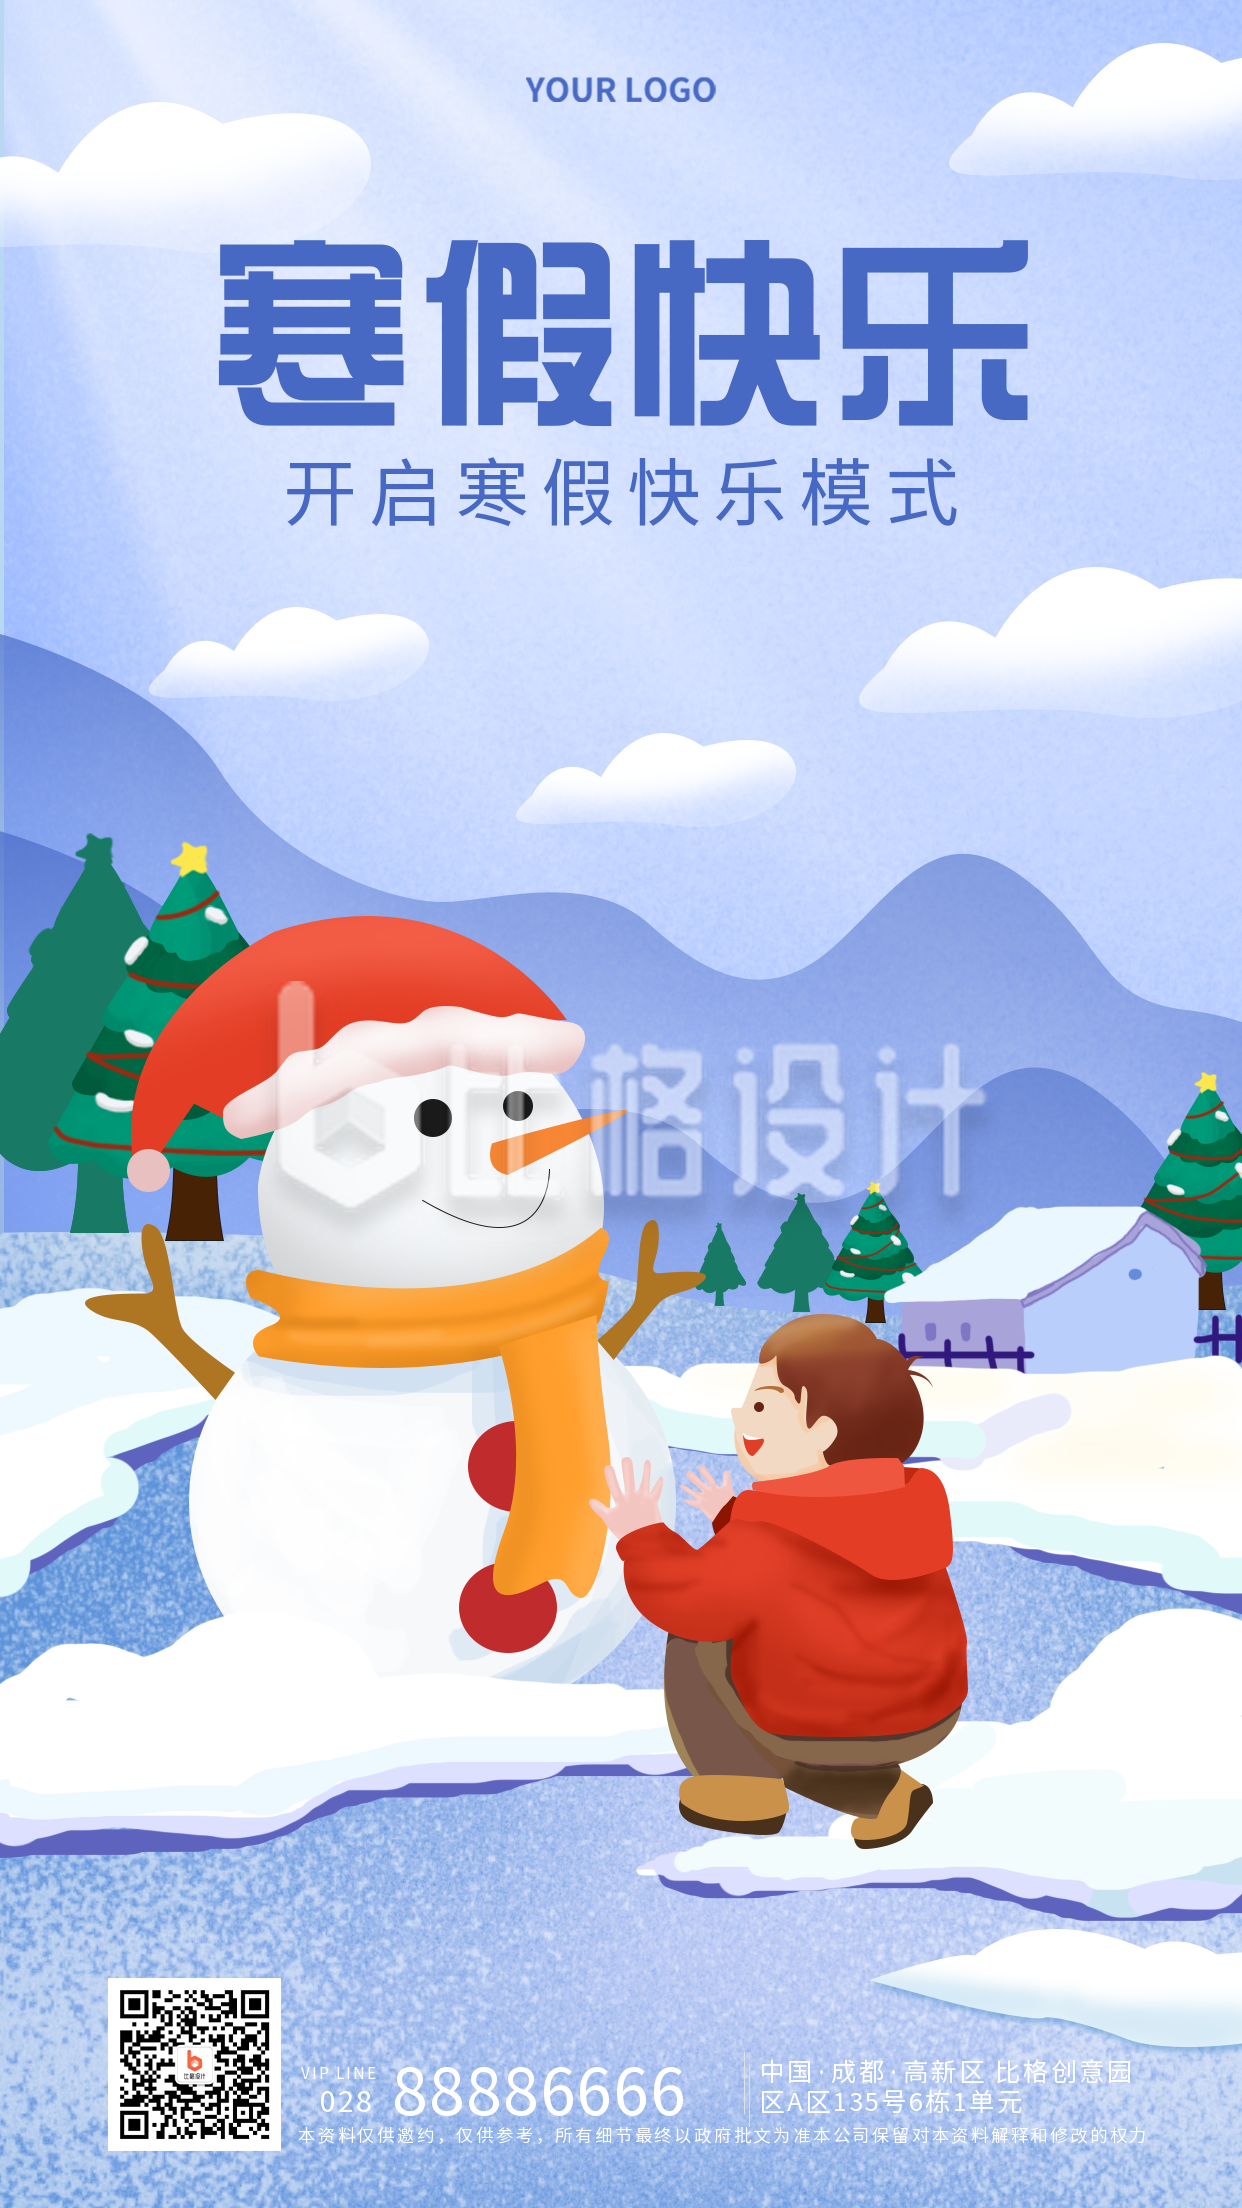 寒假快乐放假通知宣传手机海报